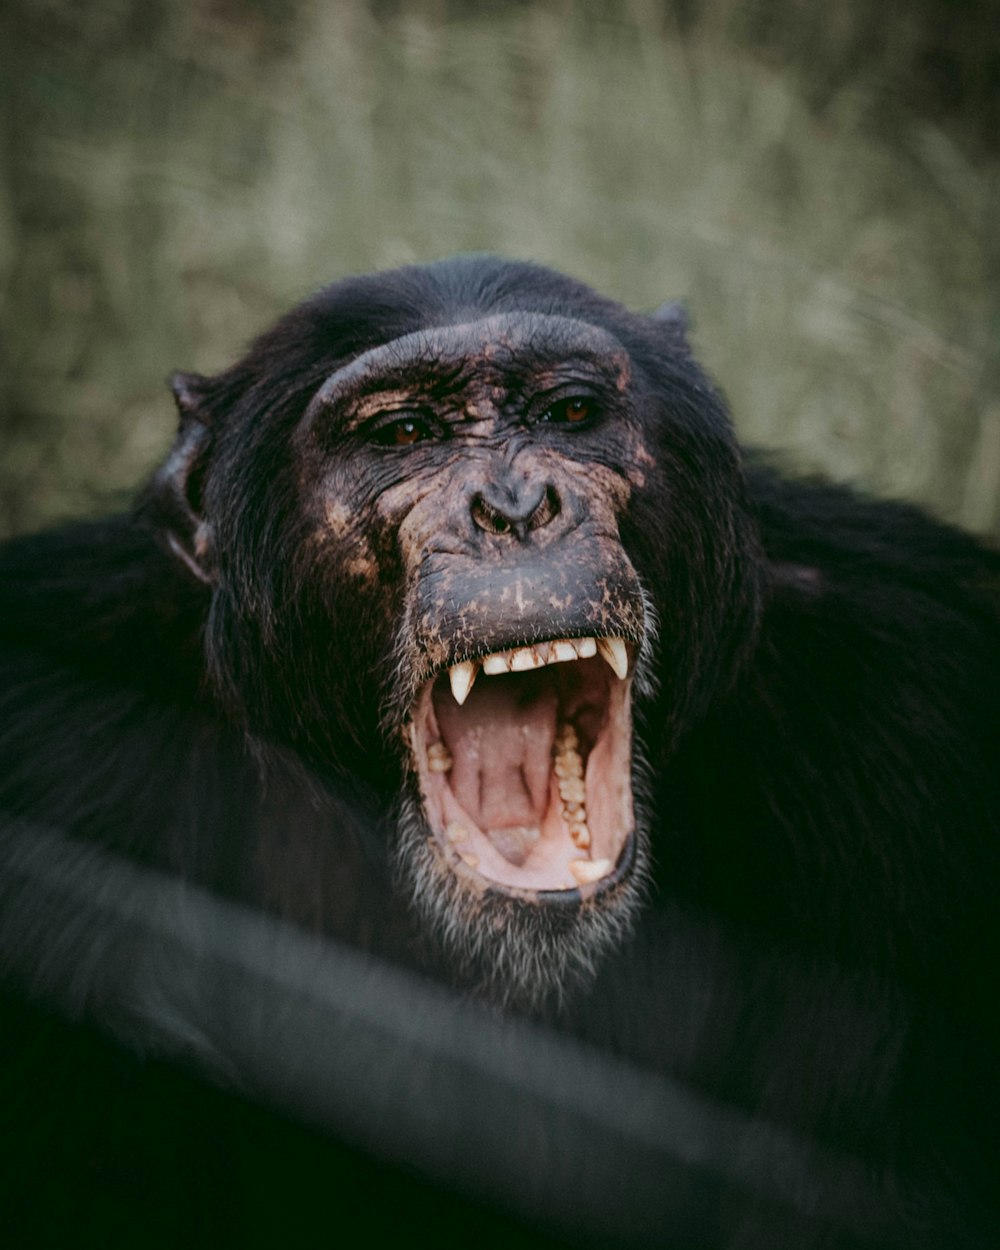 opened mouth chimpanzee